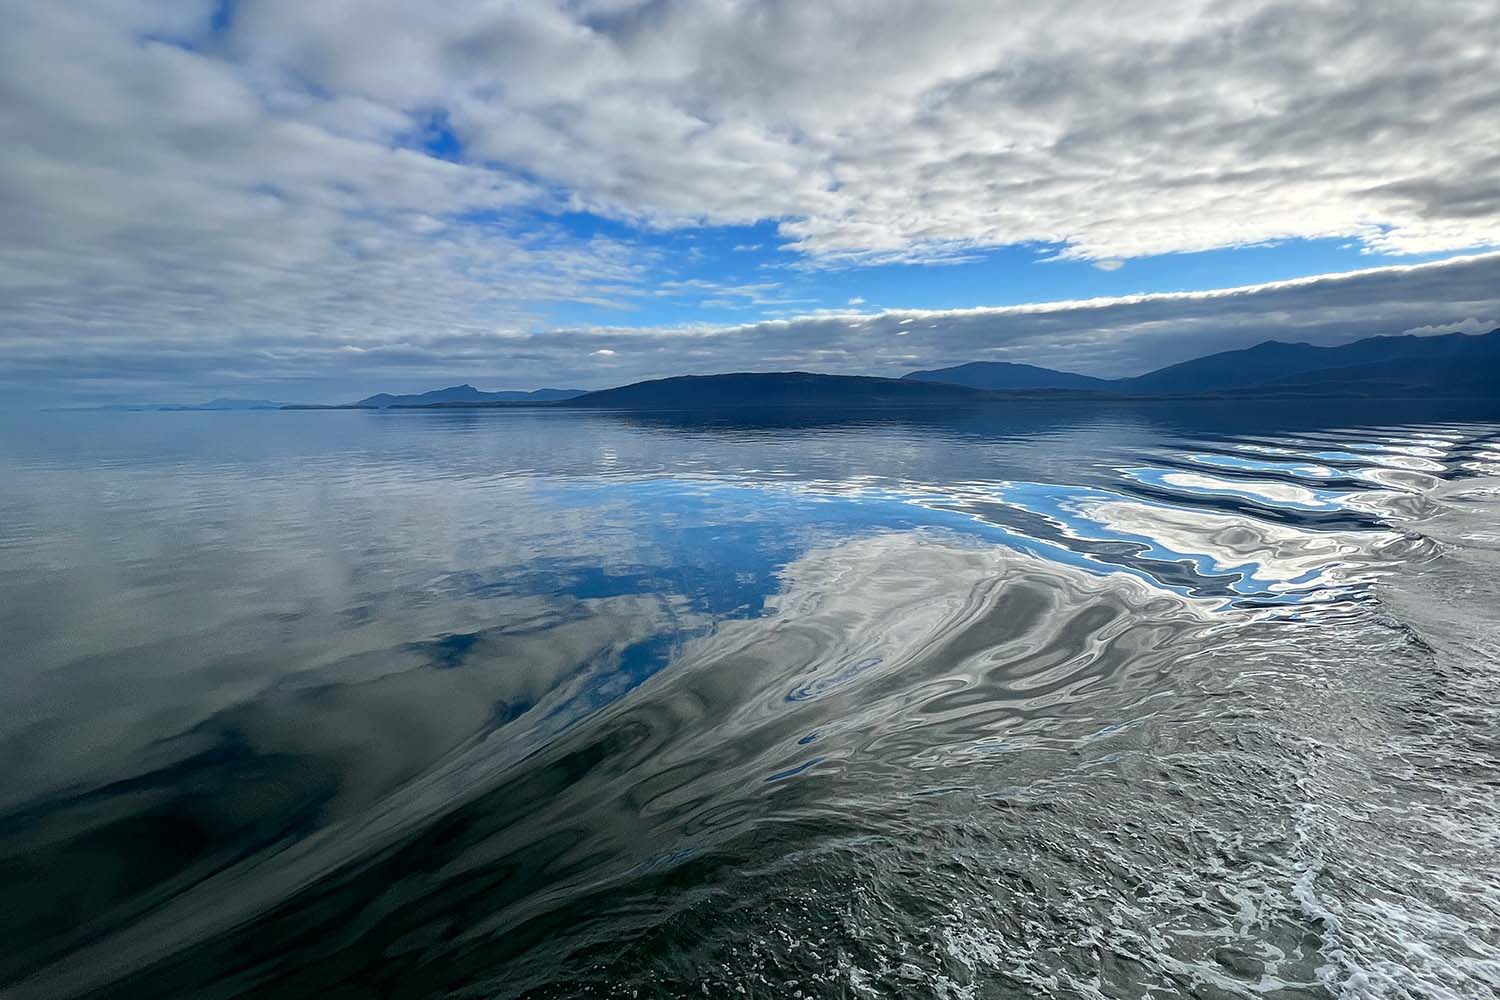 Alaskan landscape as seen from the boat